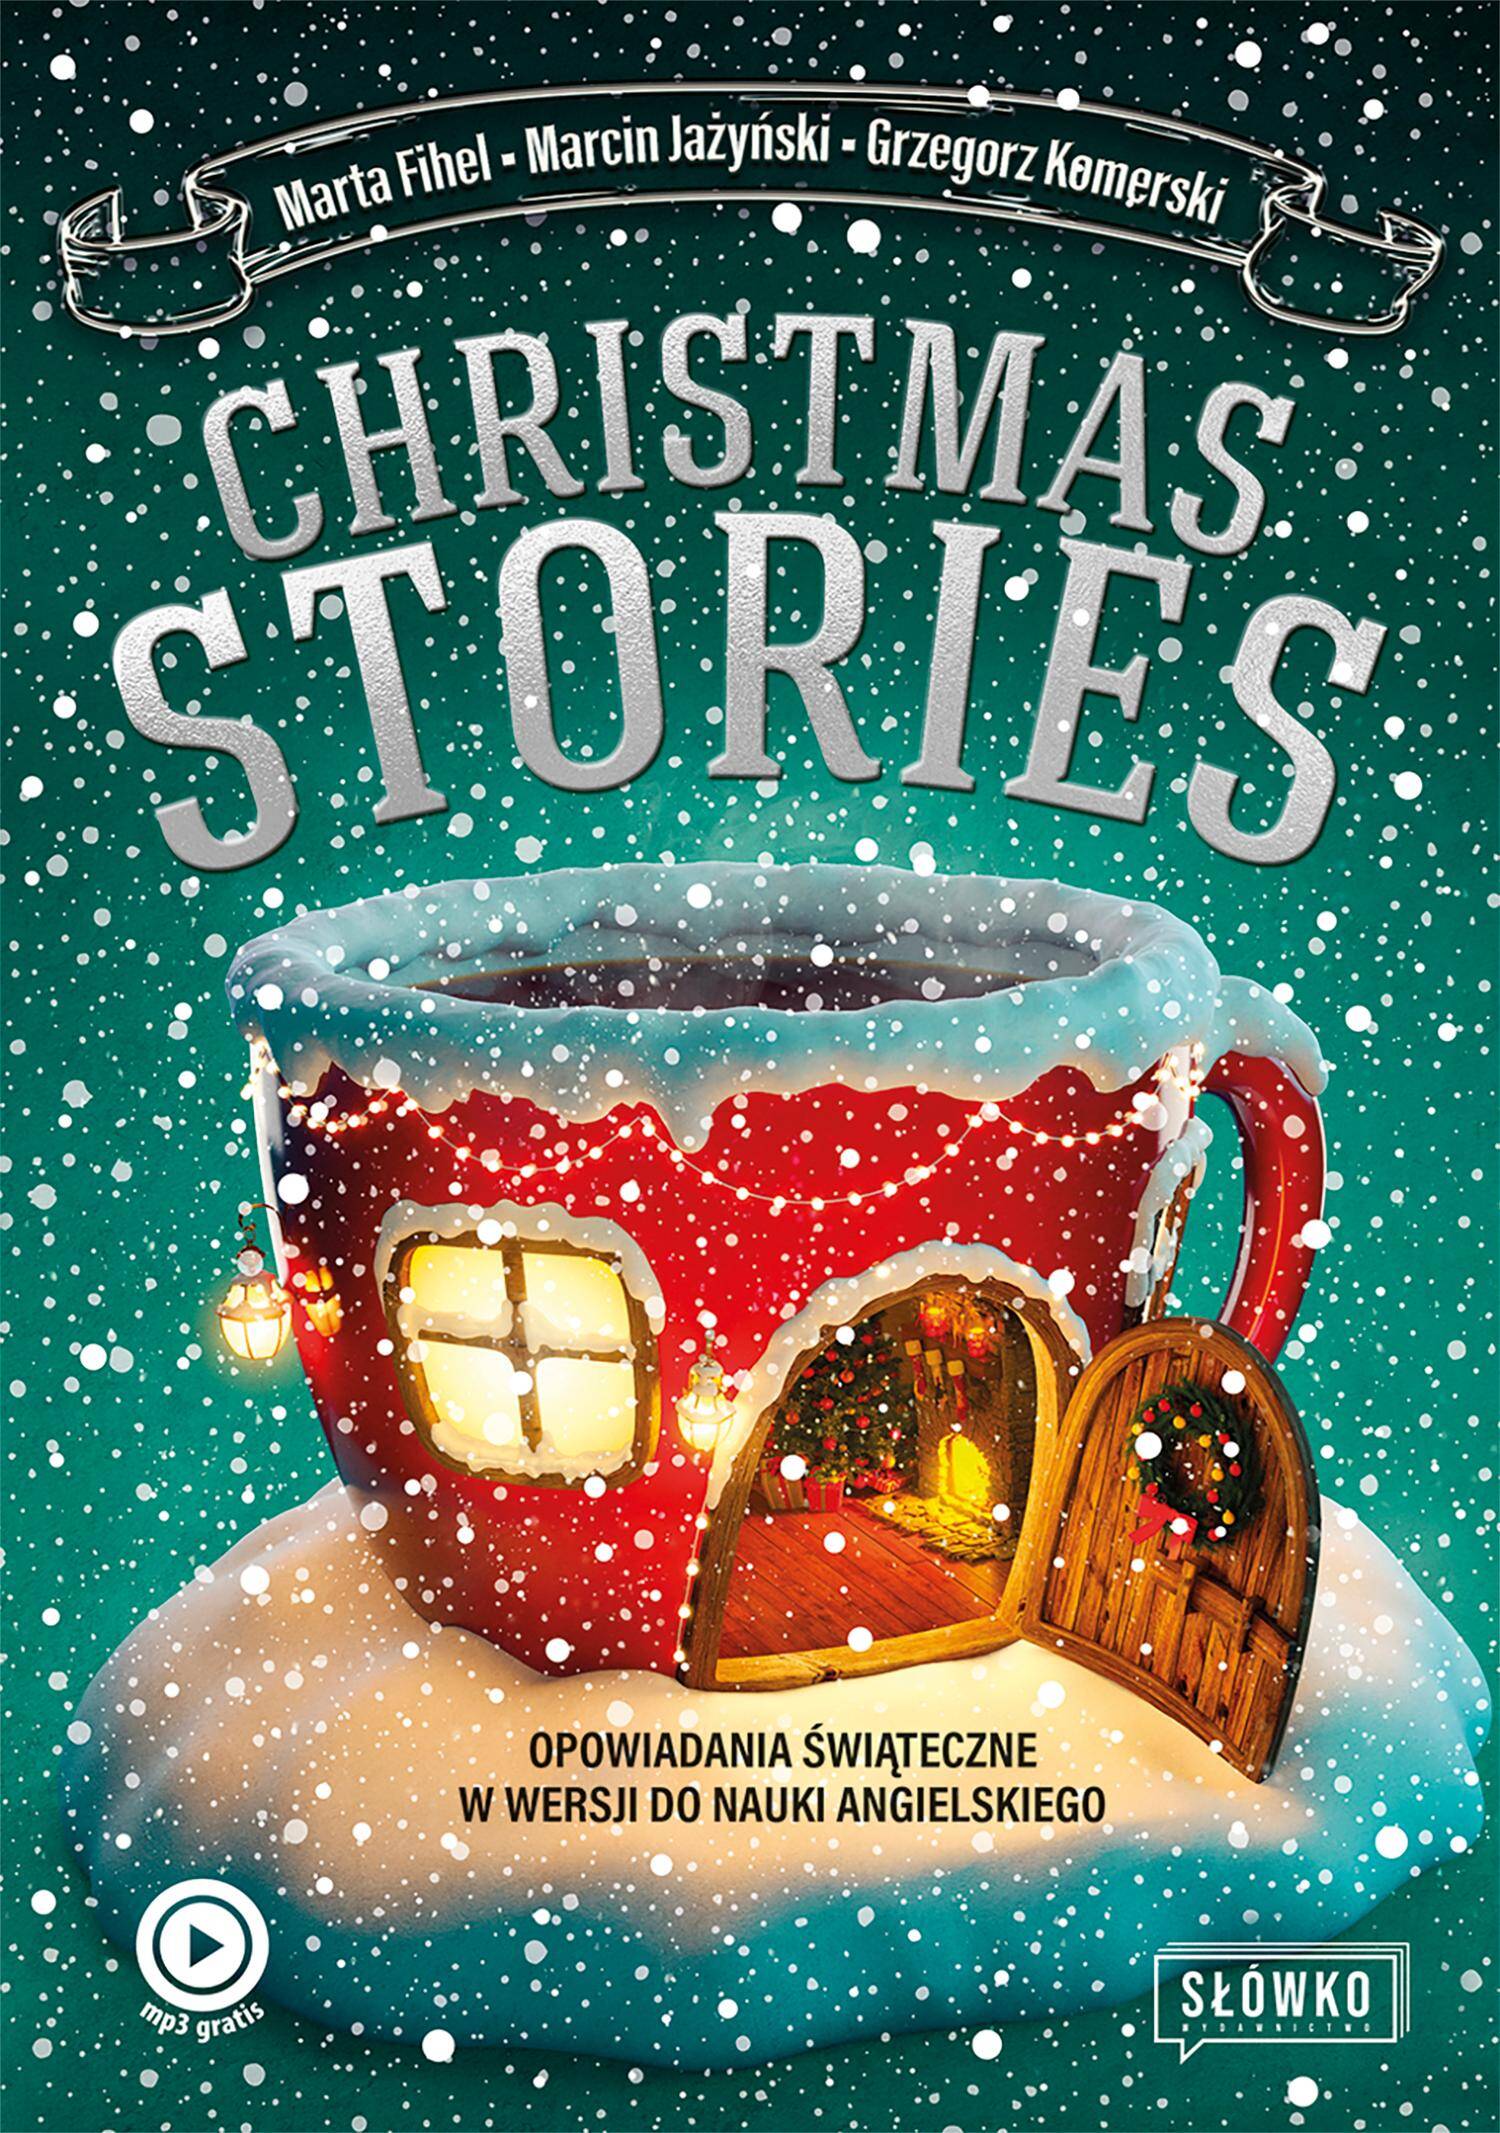 Christmas Stories. Opowiadania świąteczne w wersji do nauki angielskiego (Zdjęcie 1)